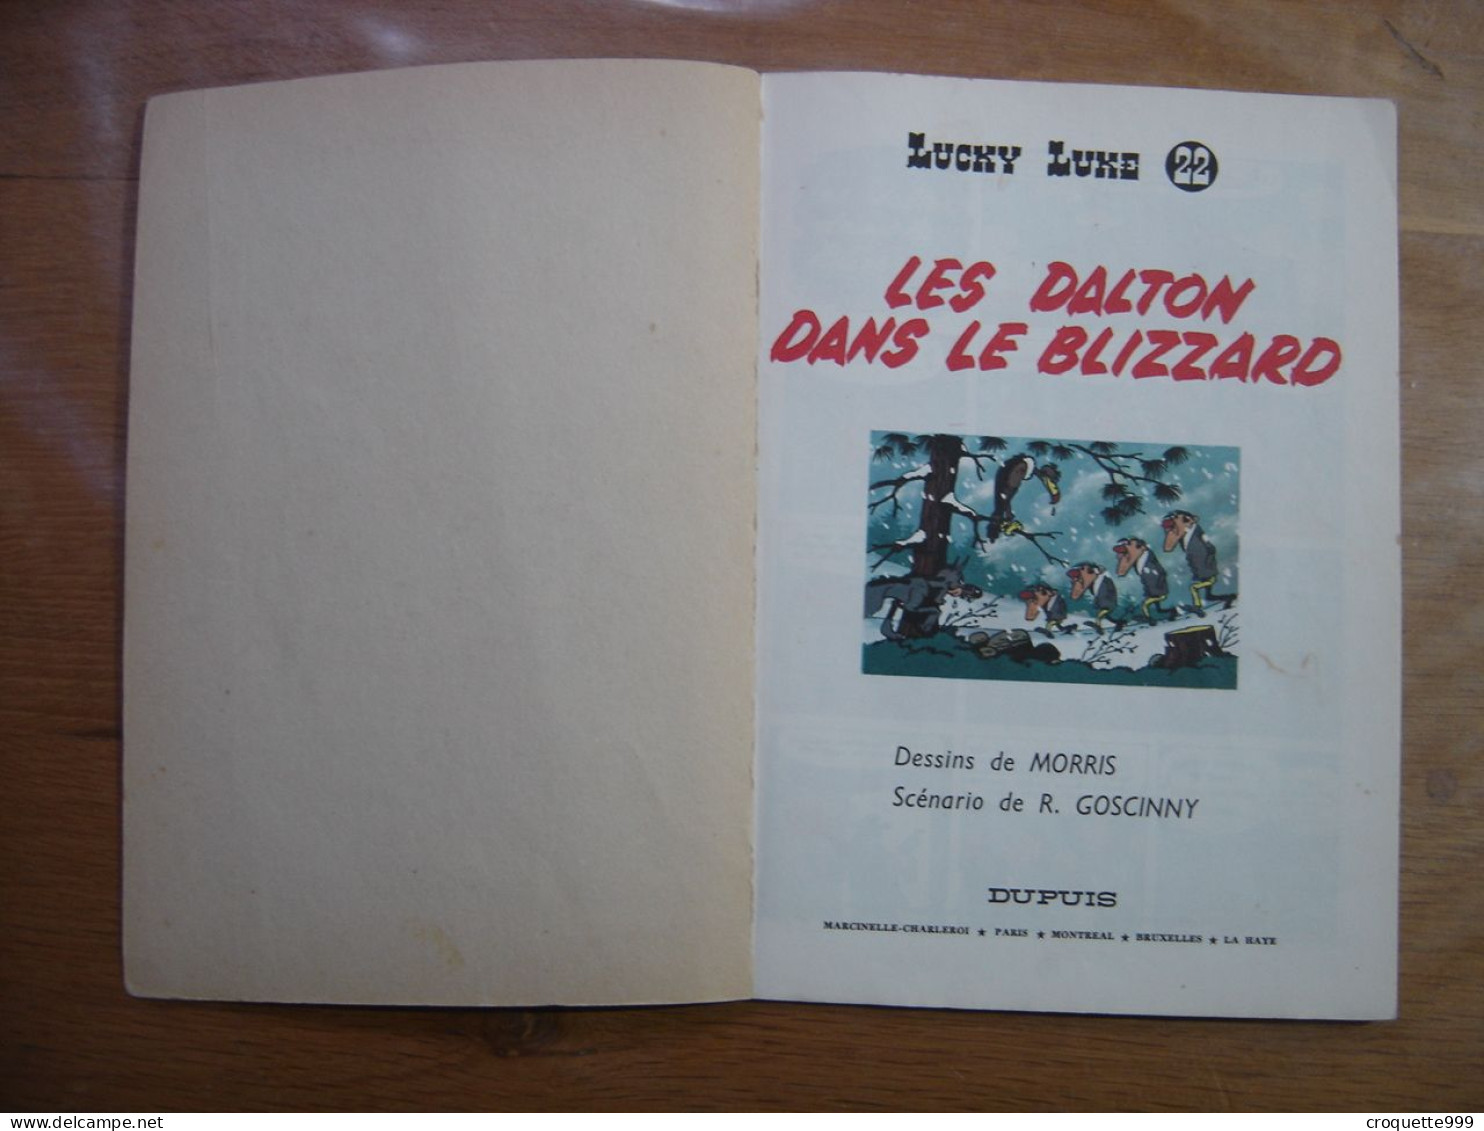 LUCKY LUKE 1969 Les Dalton Dans Le Blizzard 22 DUPUIS Morris Goscinny - Lucky Luke